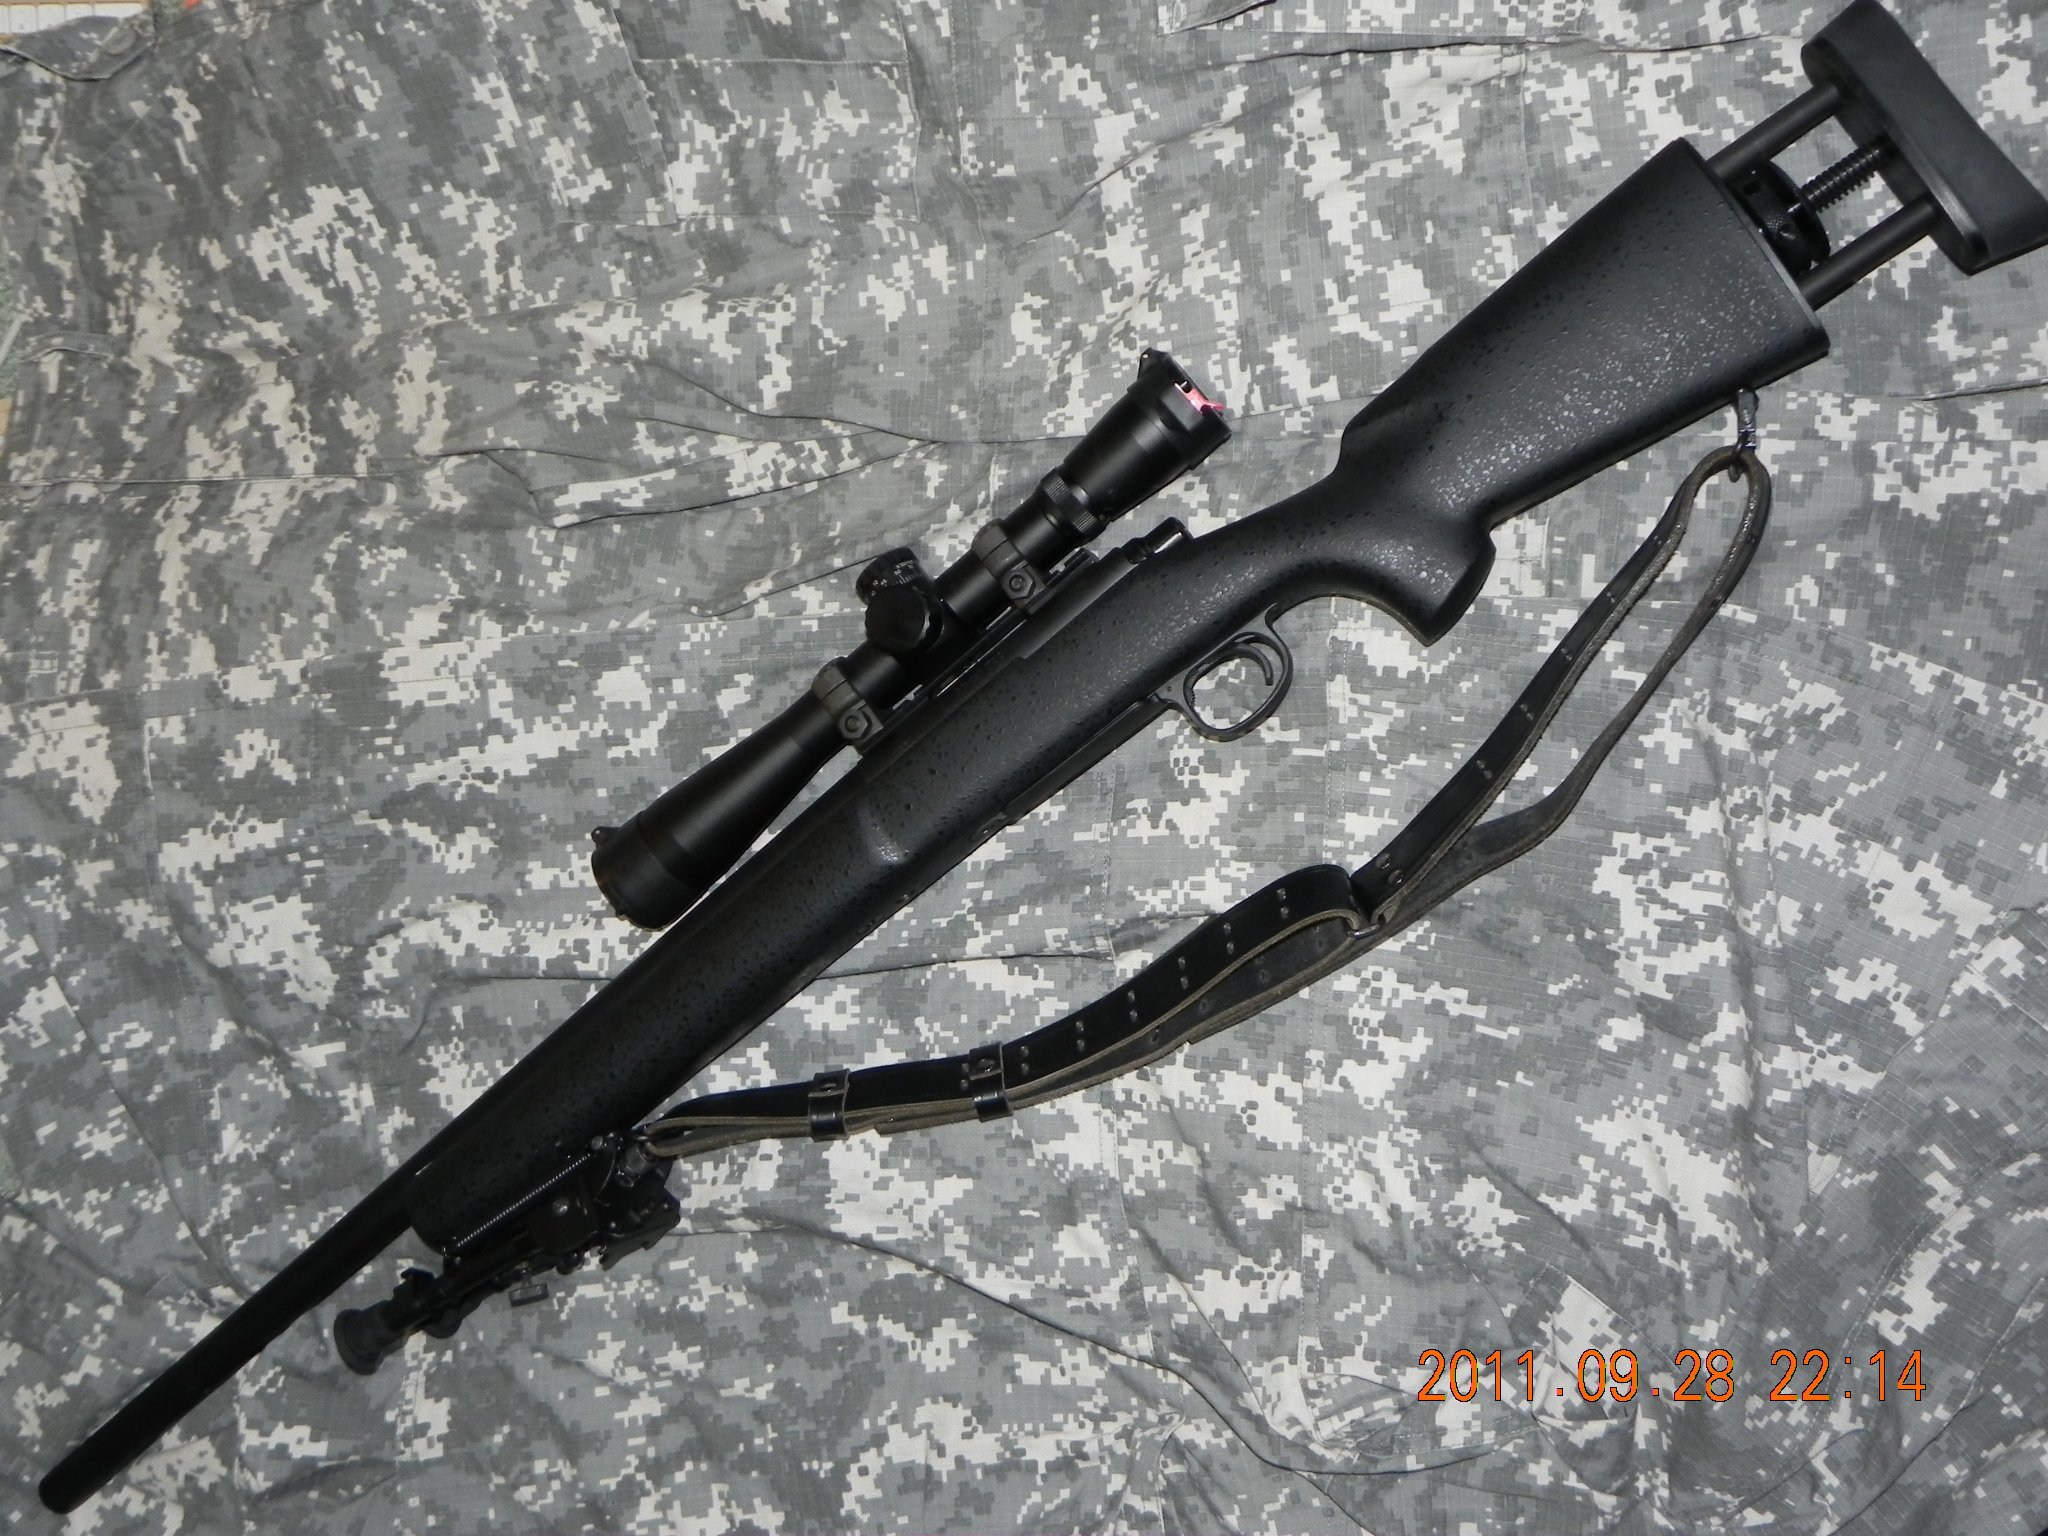 絶対的に TANAKA さんの Remington M24 Sniper Weapon System を支持し